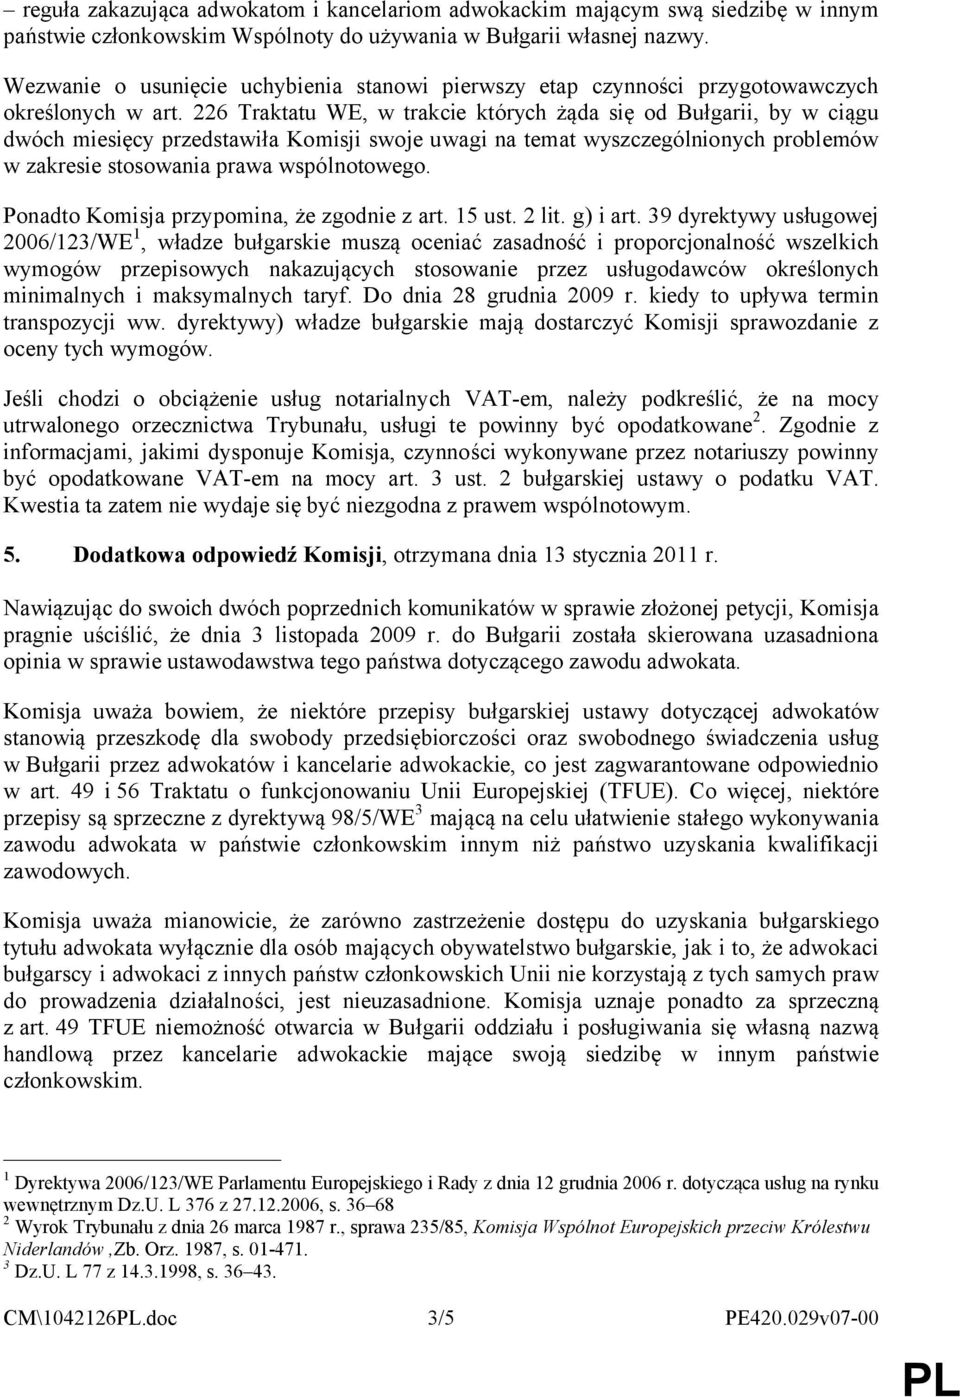 226 Traktatu WE, w trakcie których żąda się od Bułgarii, by w ciągu dwóch miesięcy przedstawiła Komisji swoje uwagi na temat wyszczególnionych problemów w zakresie stosowania prawa wspólnotowego.